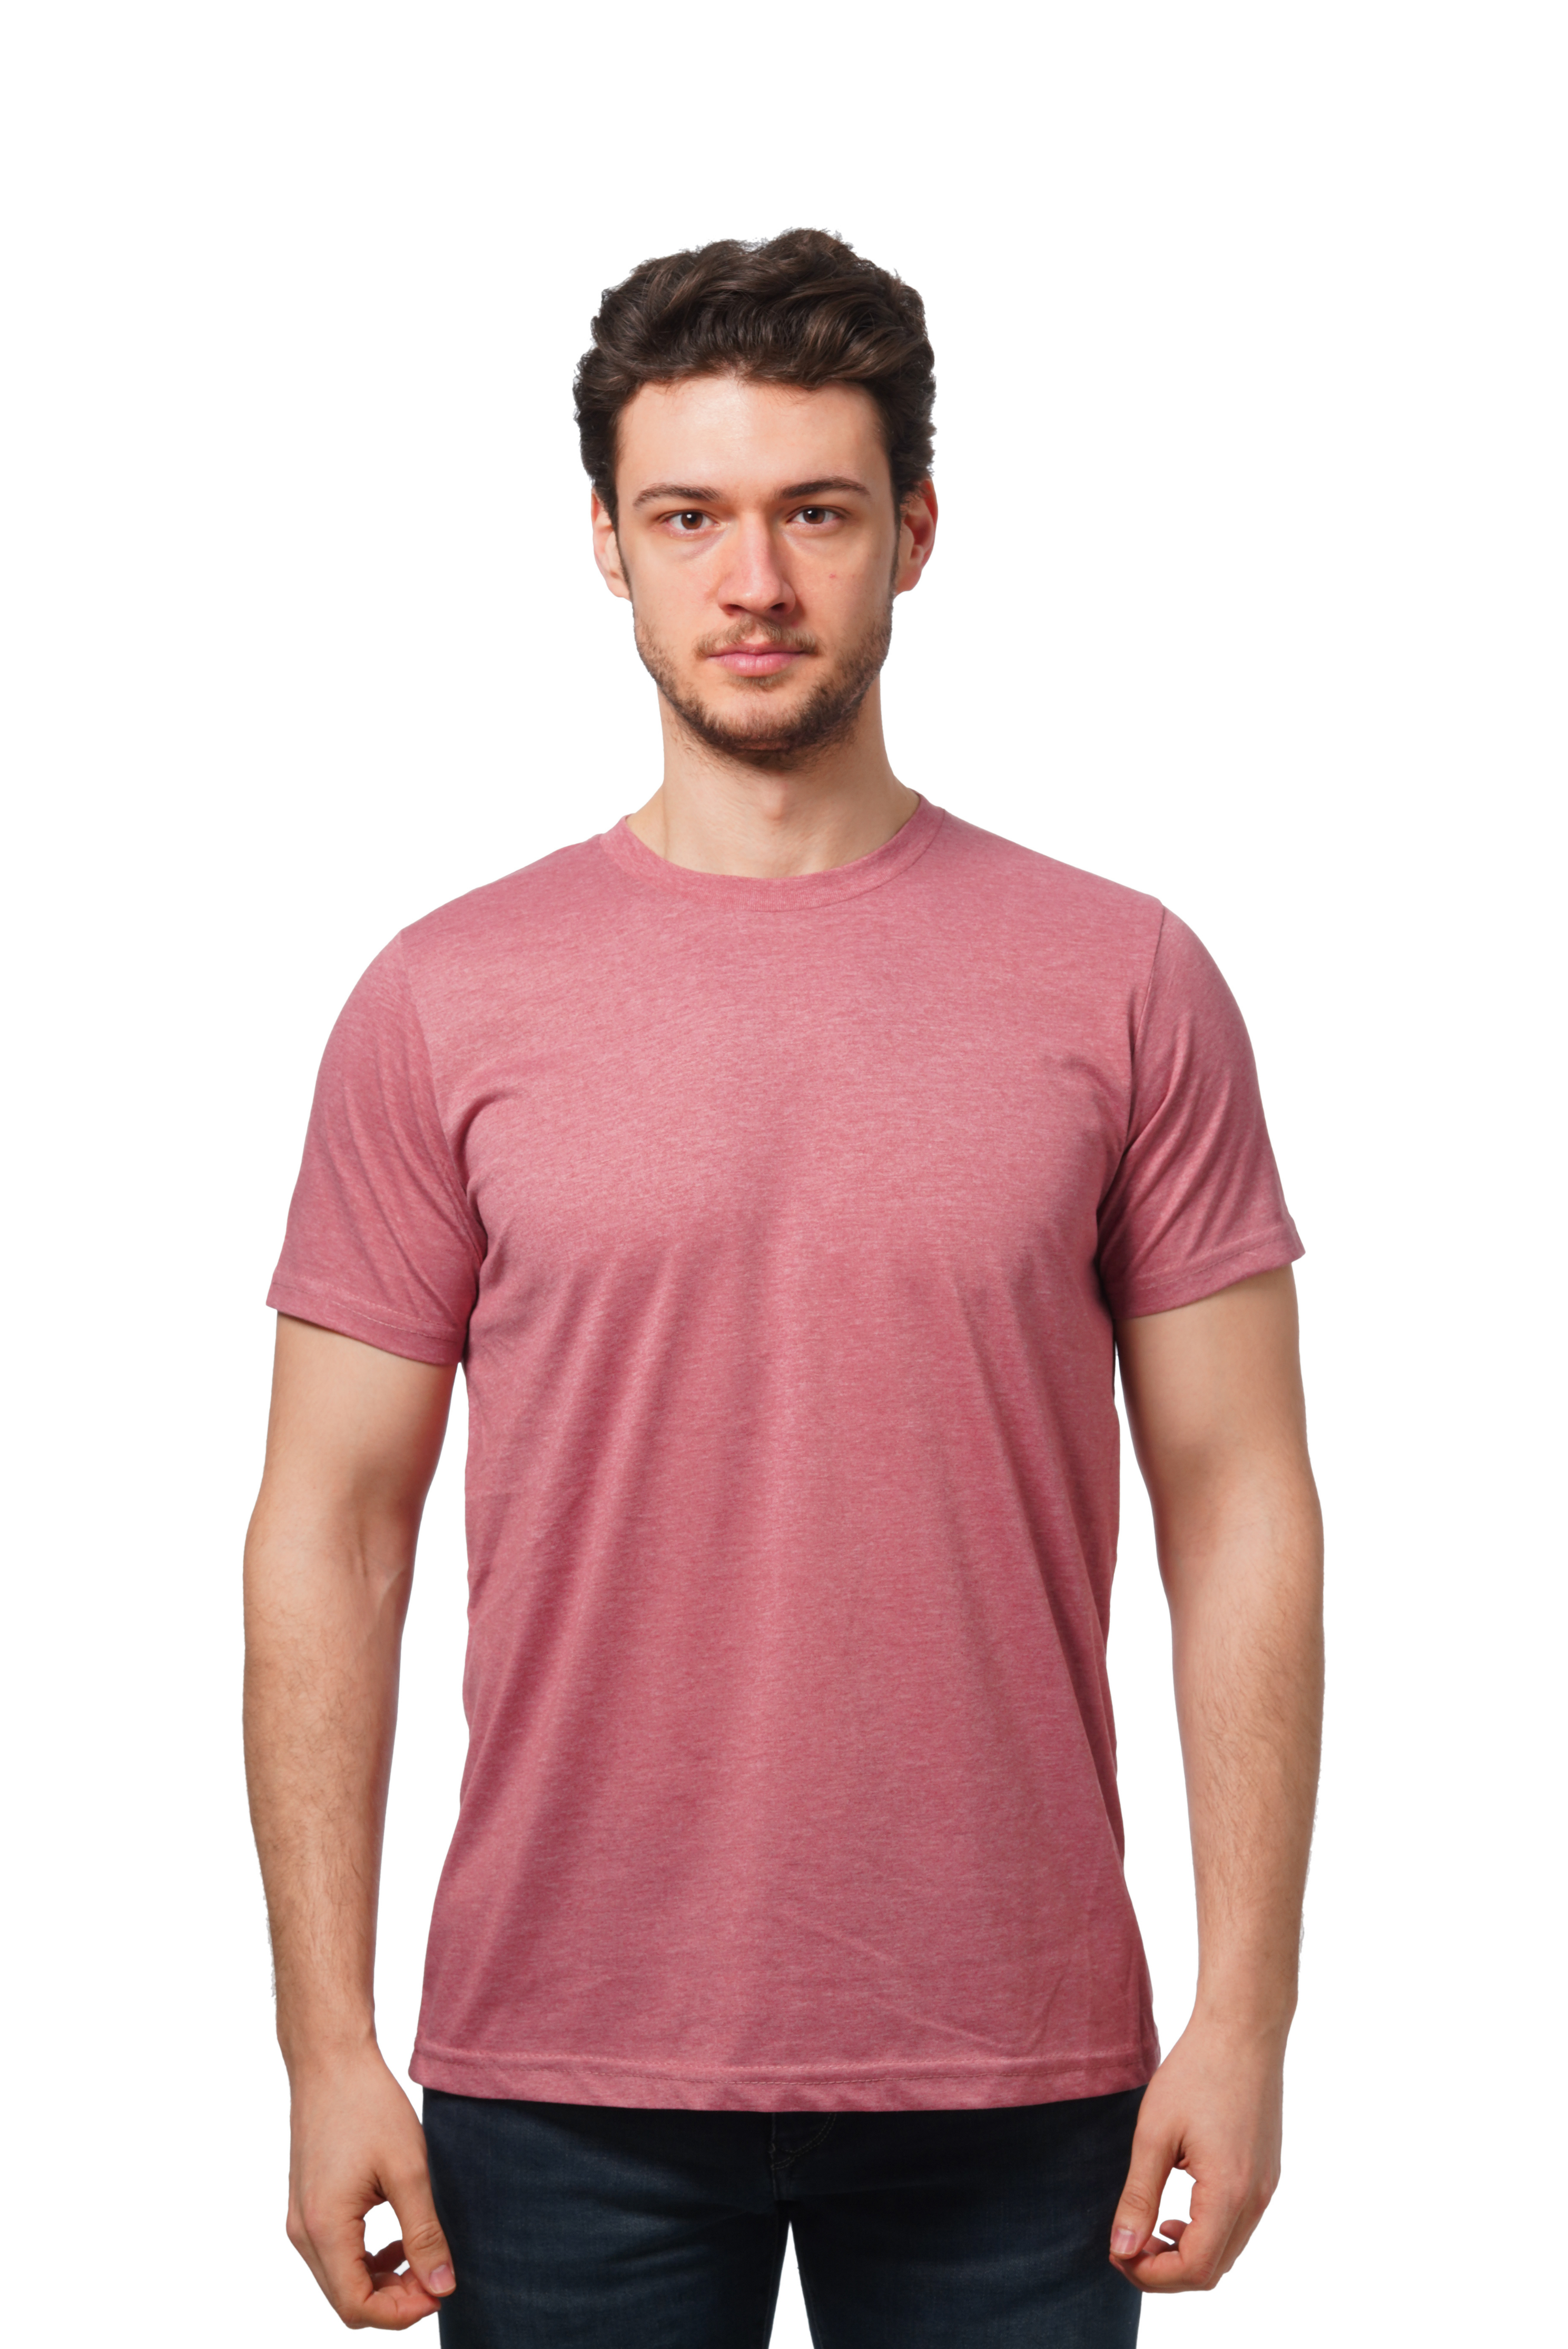 Unisex Sleeve Short Outlash T-Shirt S-XL Wear / 2001